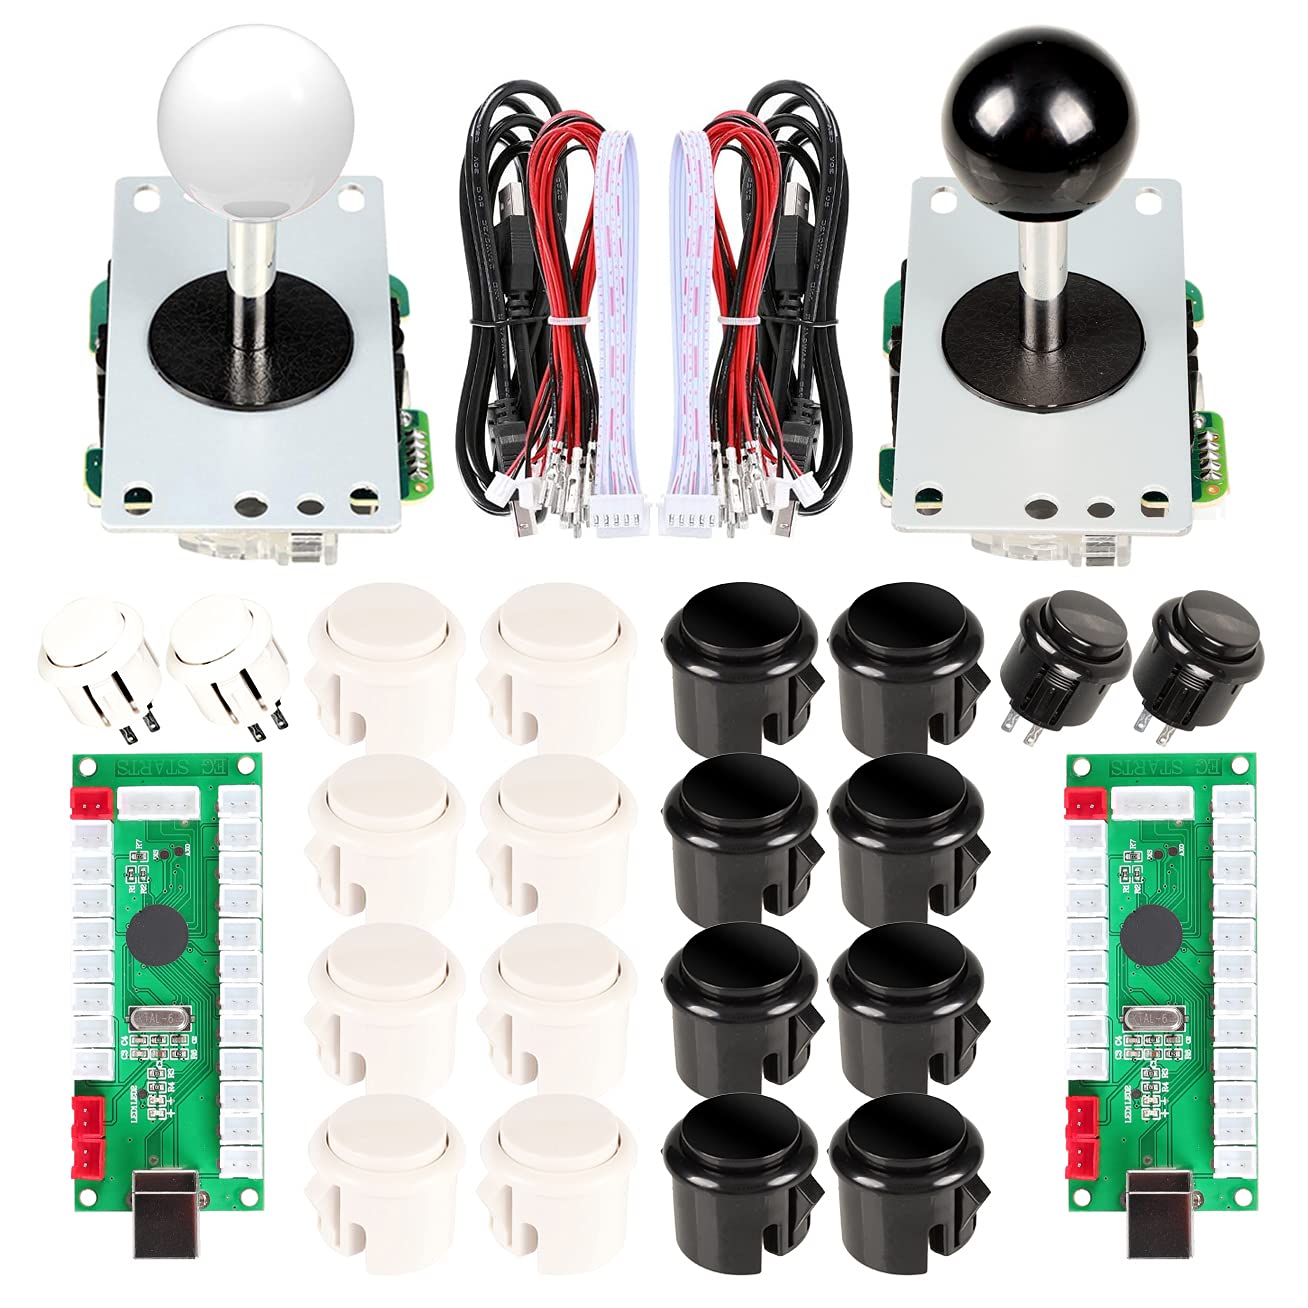 EG STARTS Arcade DIY Kits Controller USB Encoder für PC-Spiele 8 Wege Stick + 4x 24mm + 16x 30mm Druckknöpfe für Arcade Cabinet Joystick Mame Raspberry Pi 1 2 3 KOF Teile weiß/schwarz